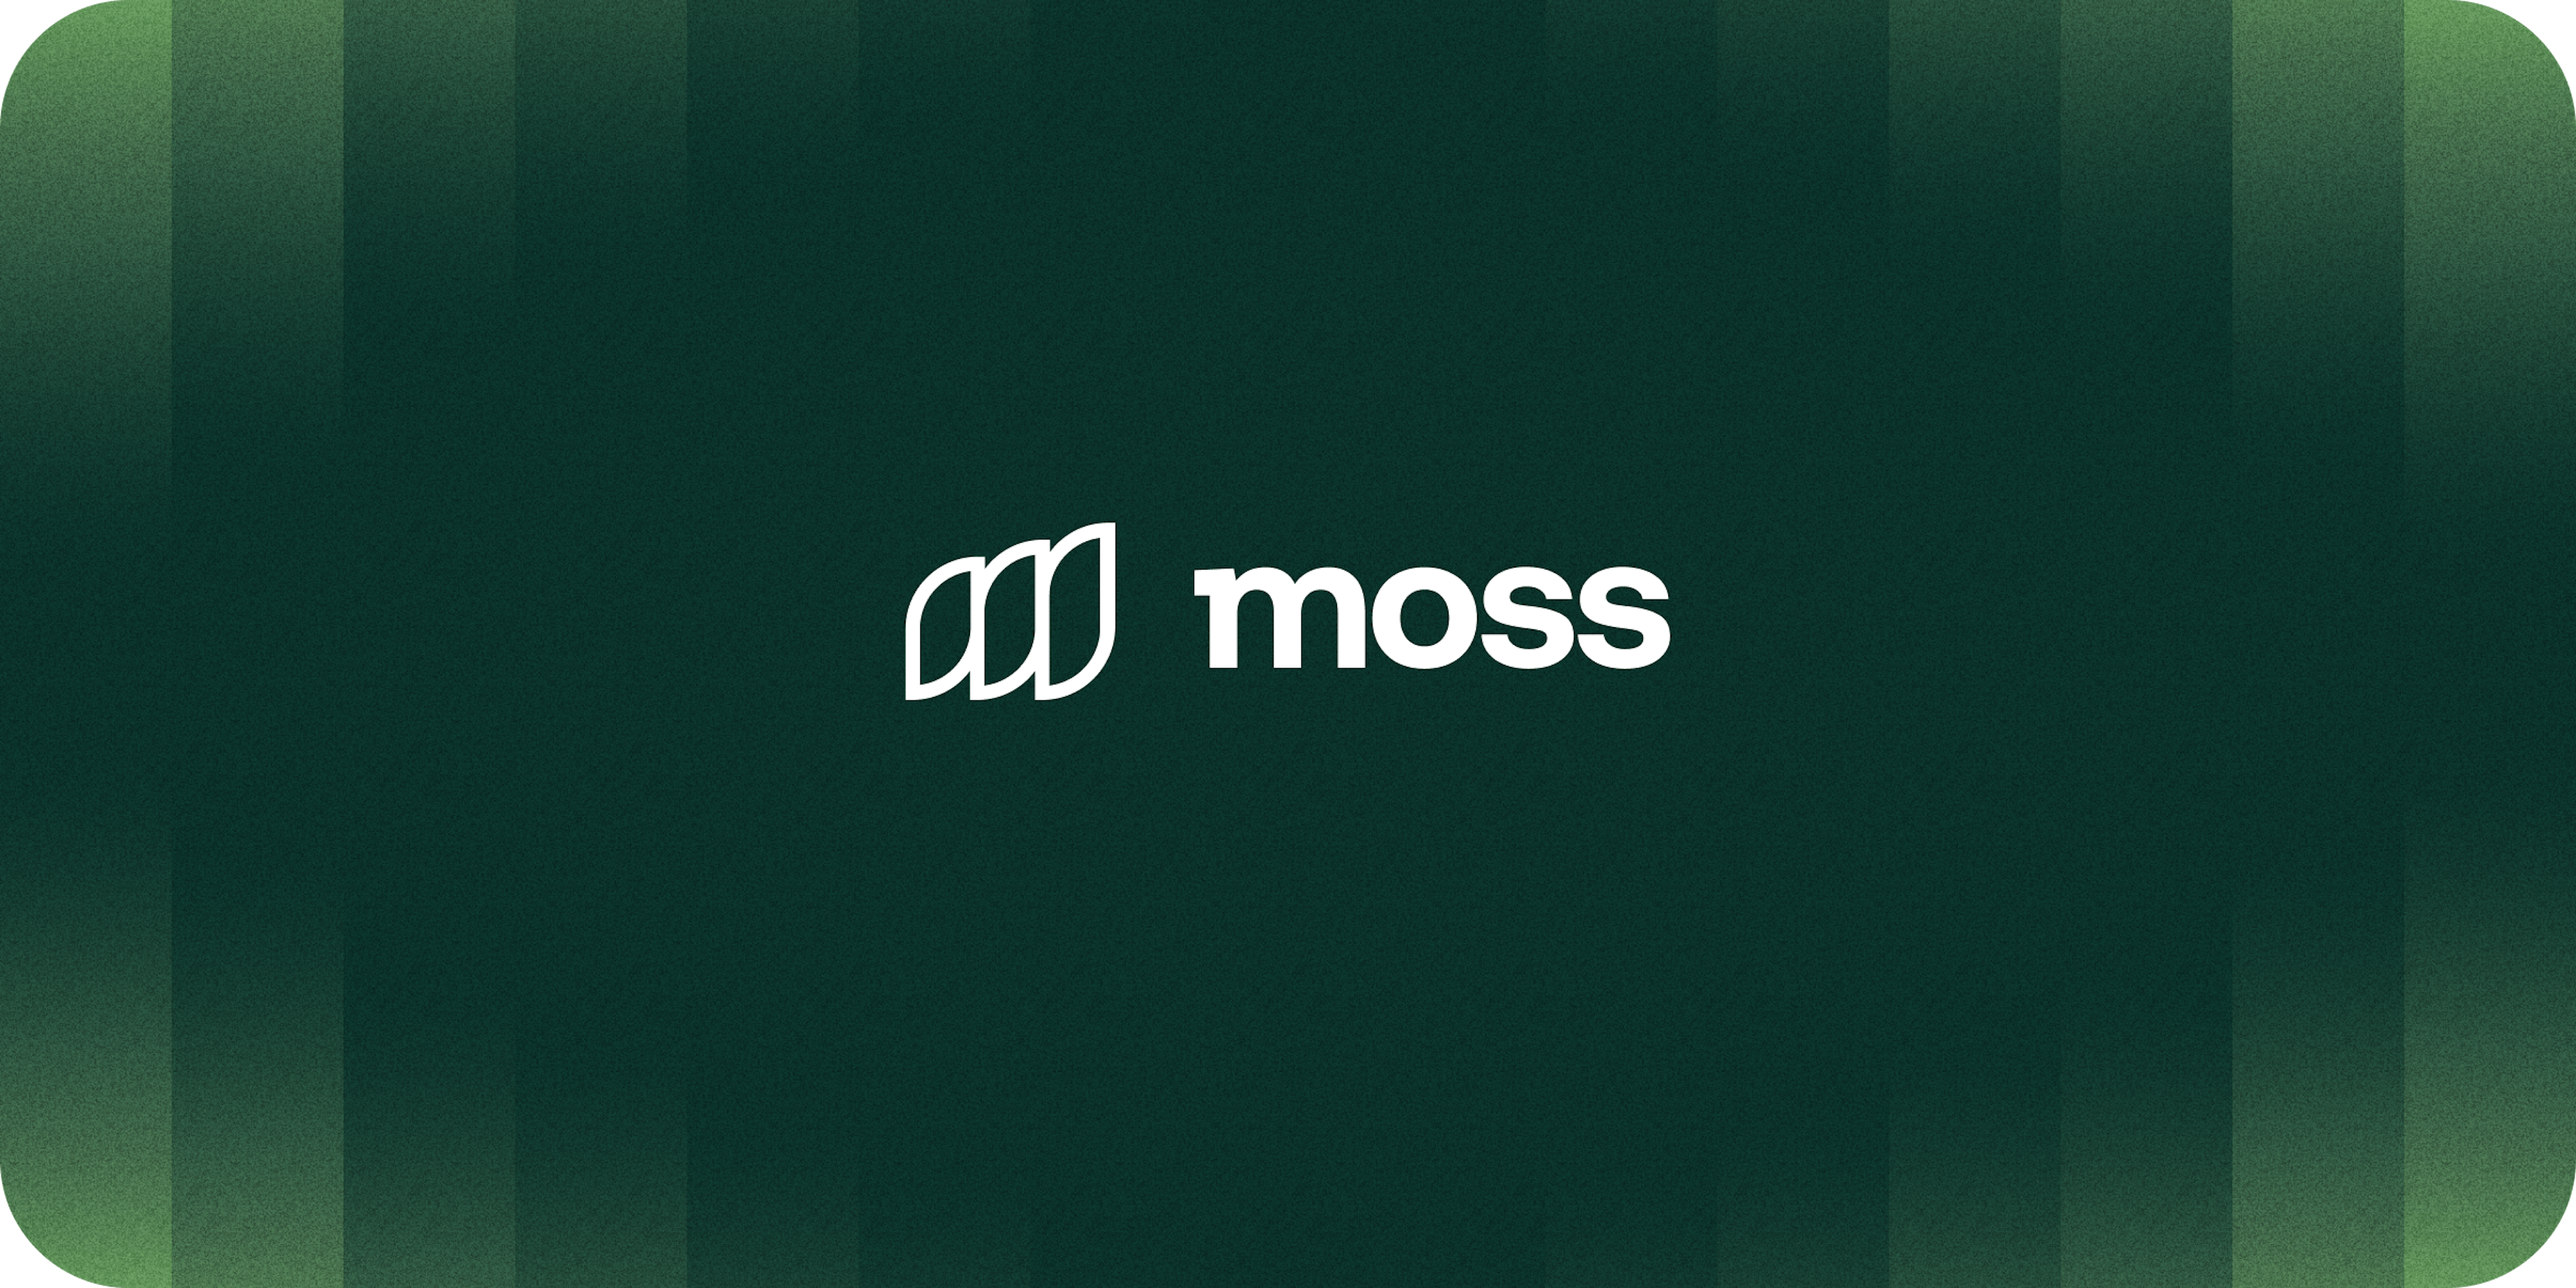 Momentum for Moss